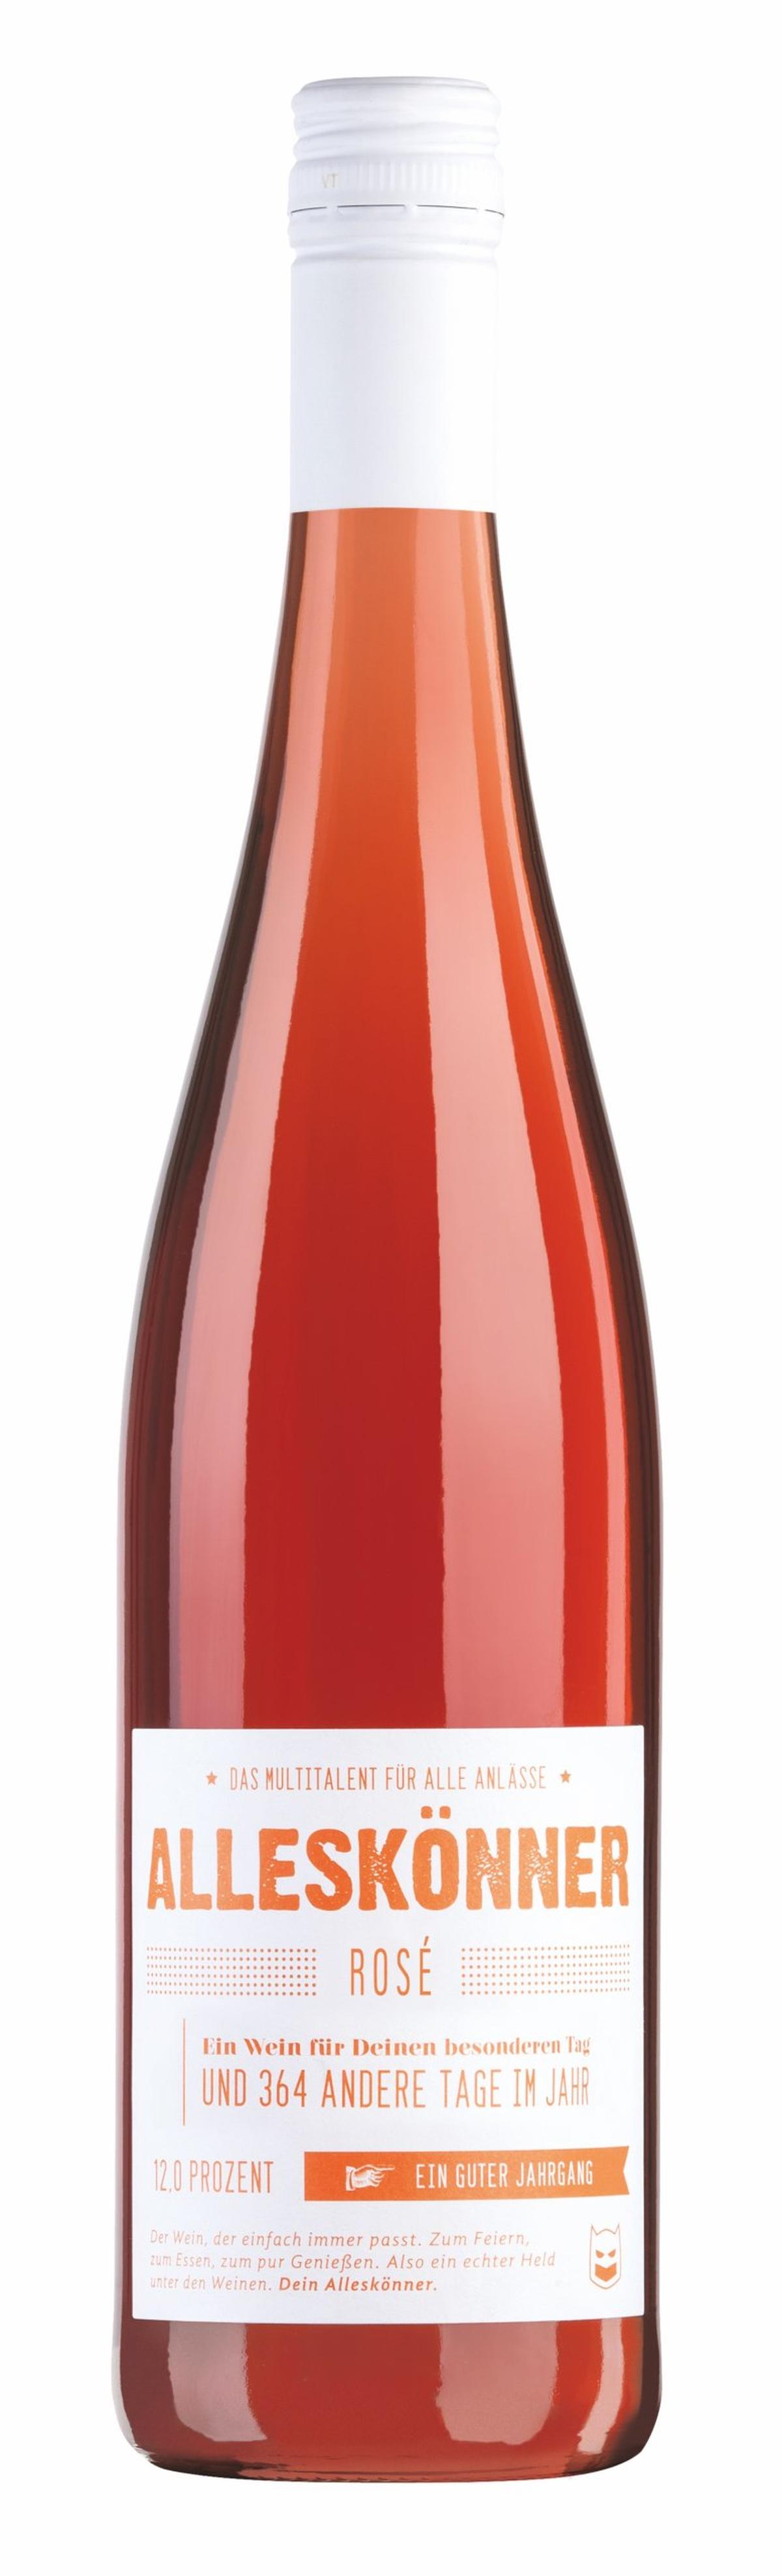 Dieser Rosé ist ein Alleskönner einer unserer Top 10 Weine!